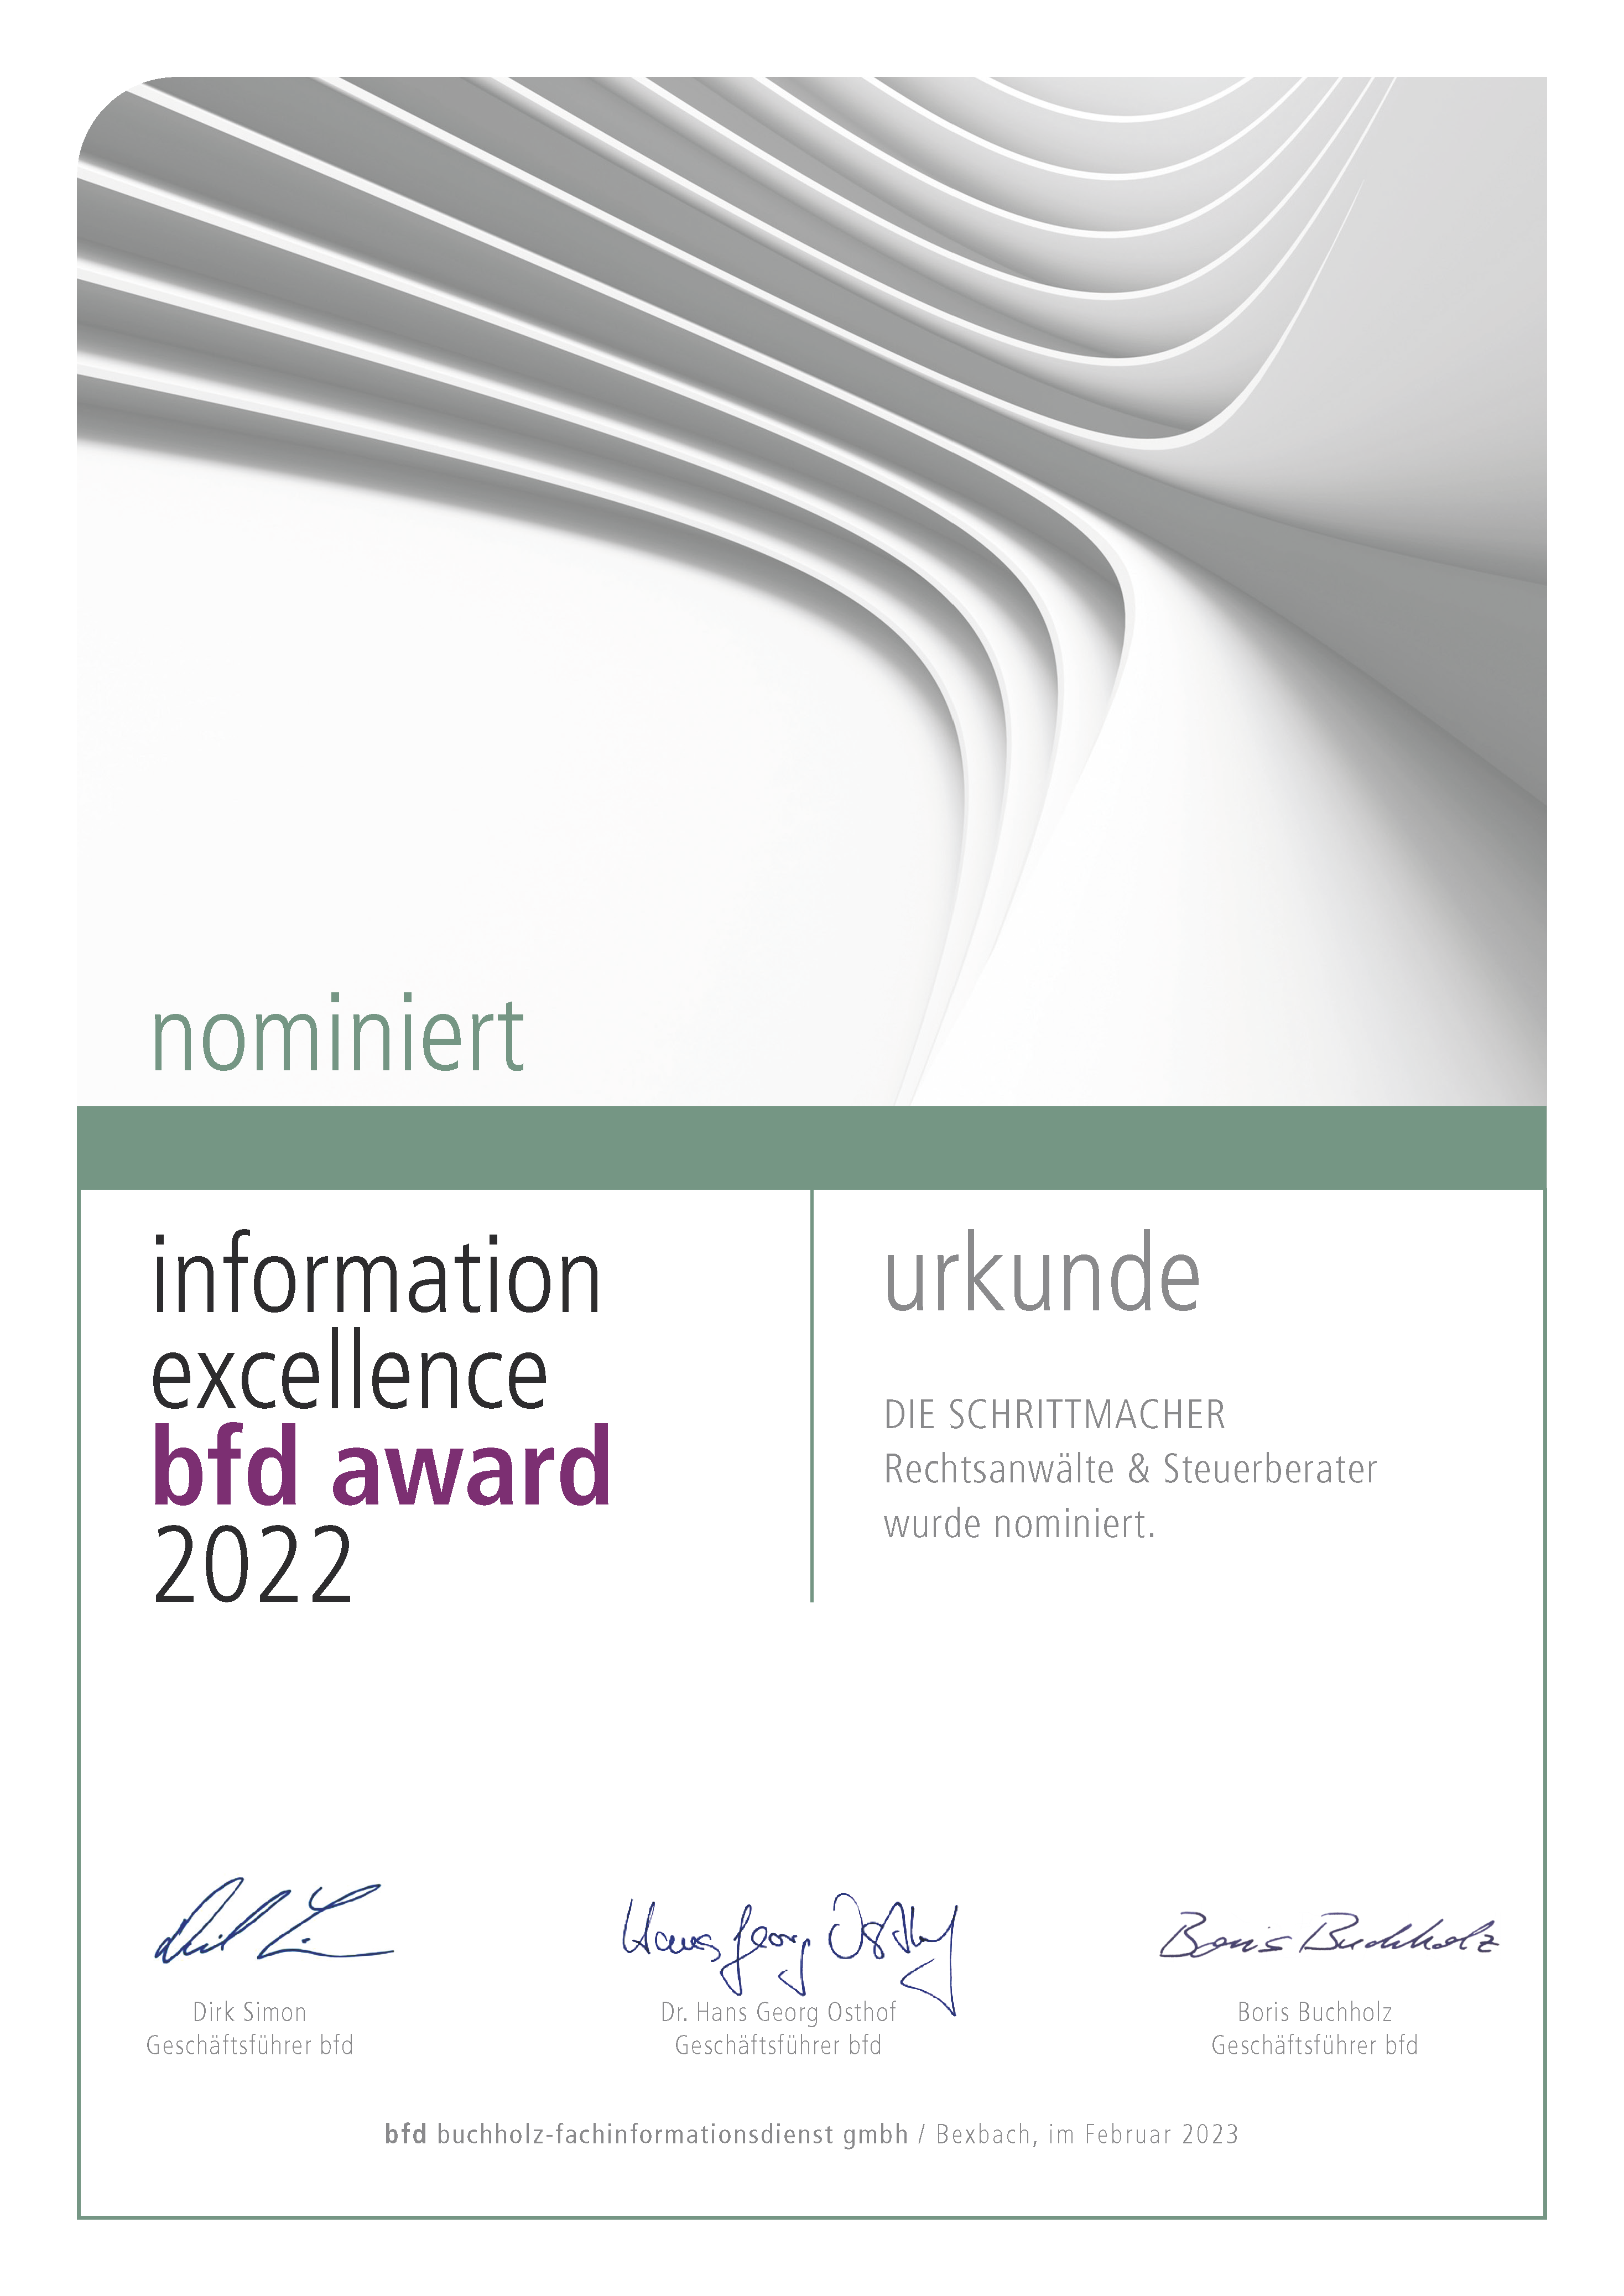 DIE SCHRITTMACHER - information excellence bfd award 2022